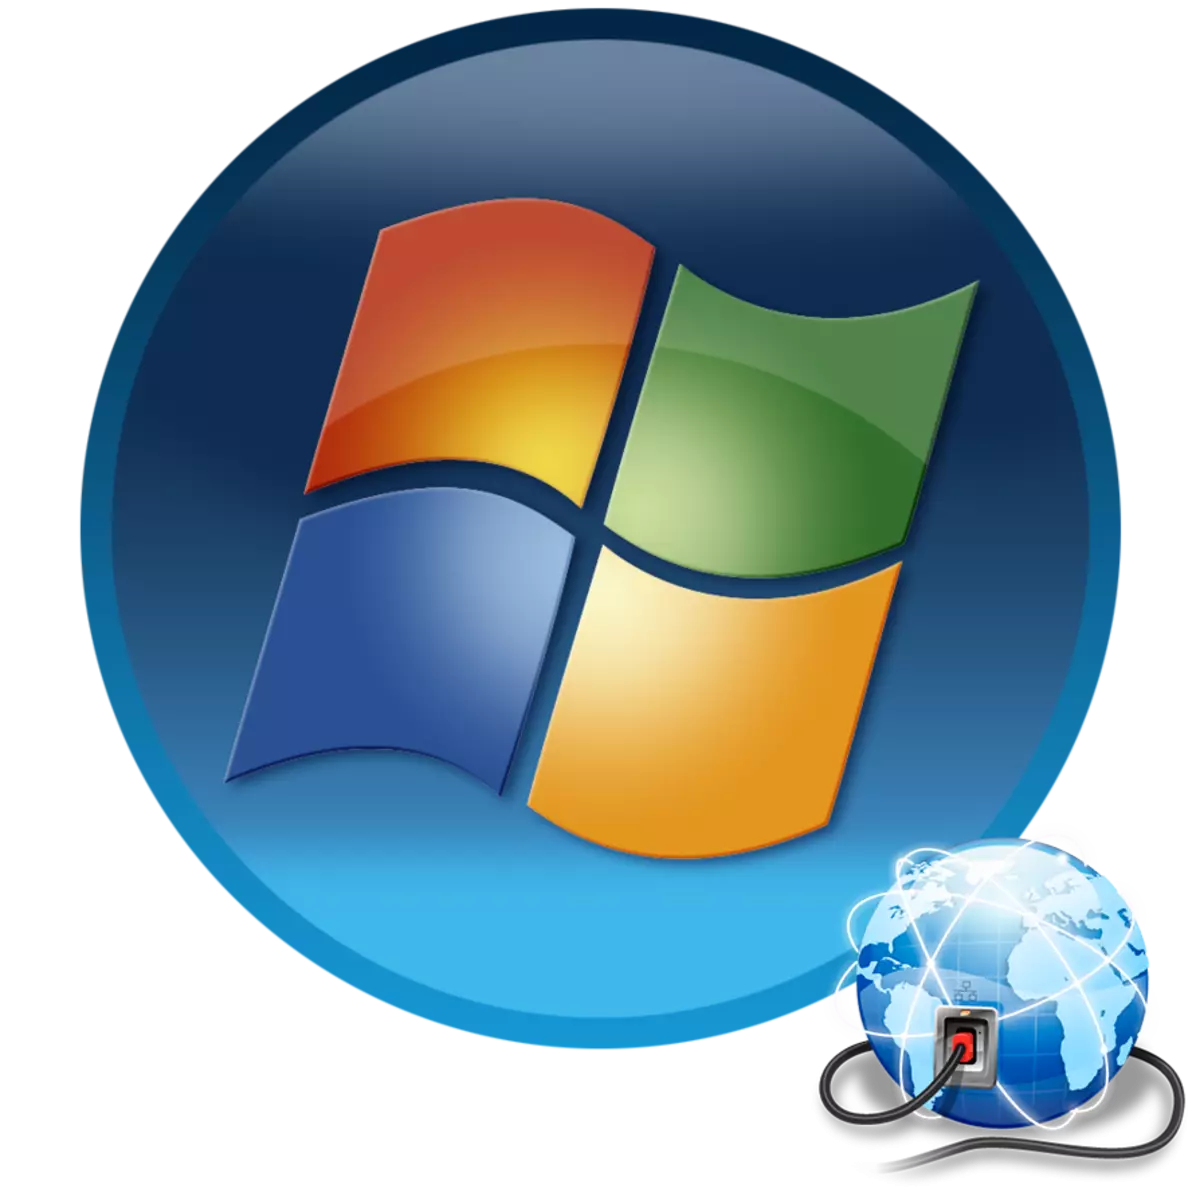 Internettoppsett i Windows 7